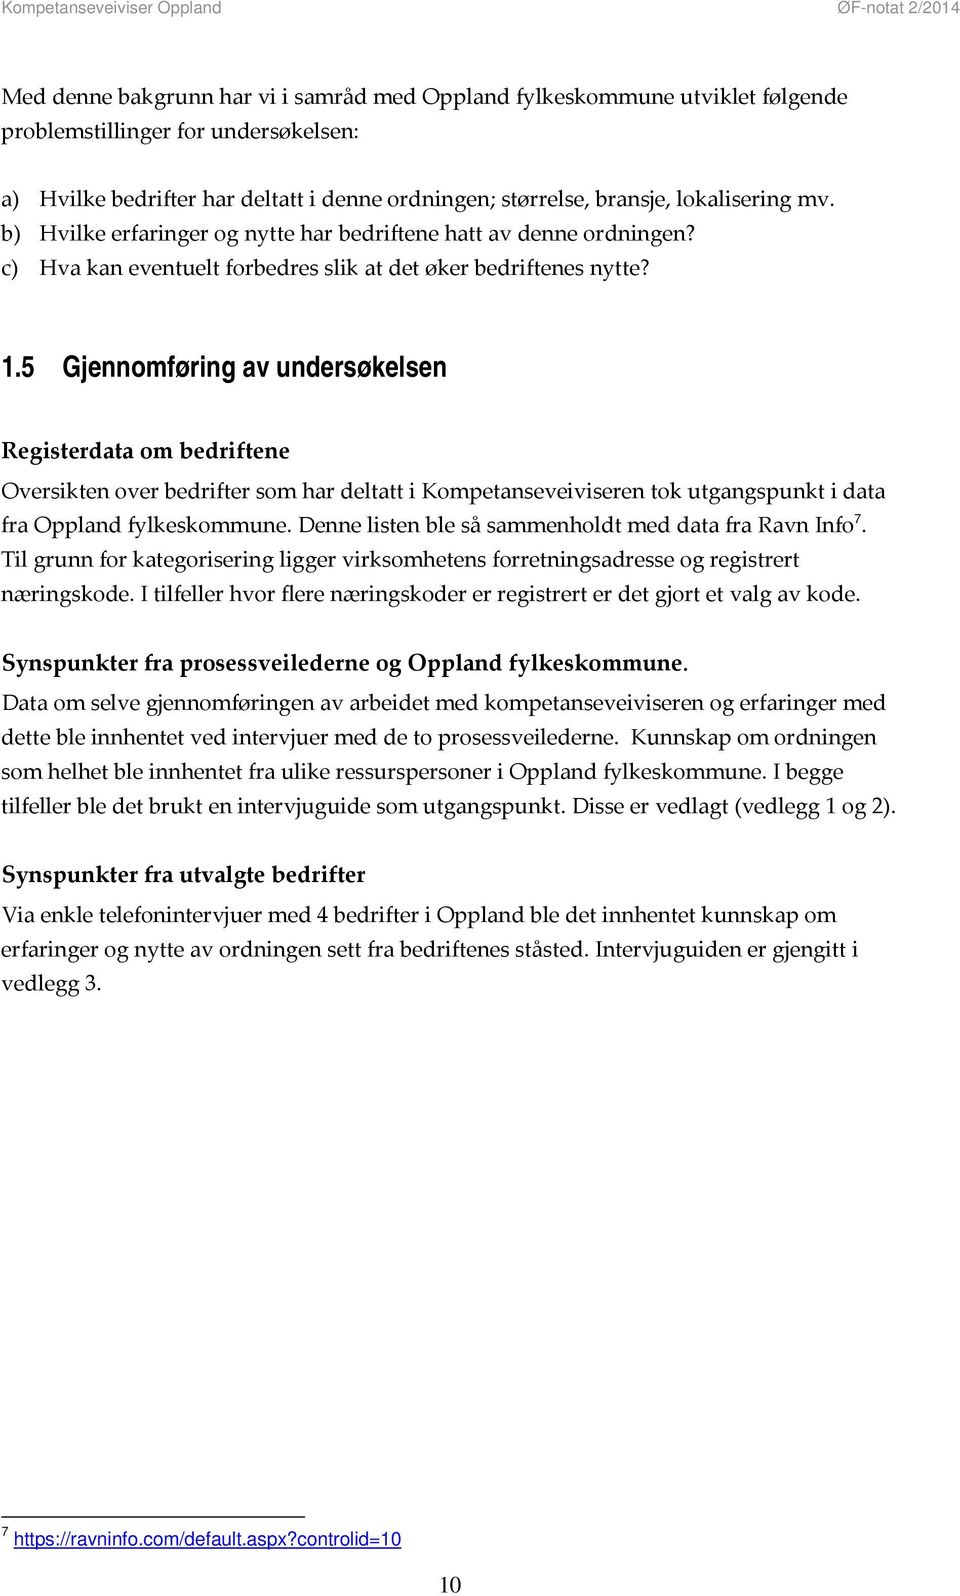 5 Gjennomføring av undersøkelsen Registerdata om bedriftene Oversikten over bedrifter som har deltatt i Kompetanseveiviseren tok utgangspunkt i data fra Oppland fylkeskommune.